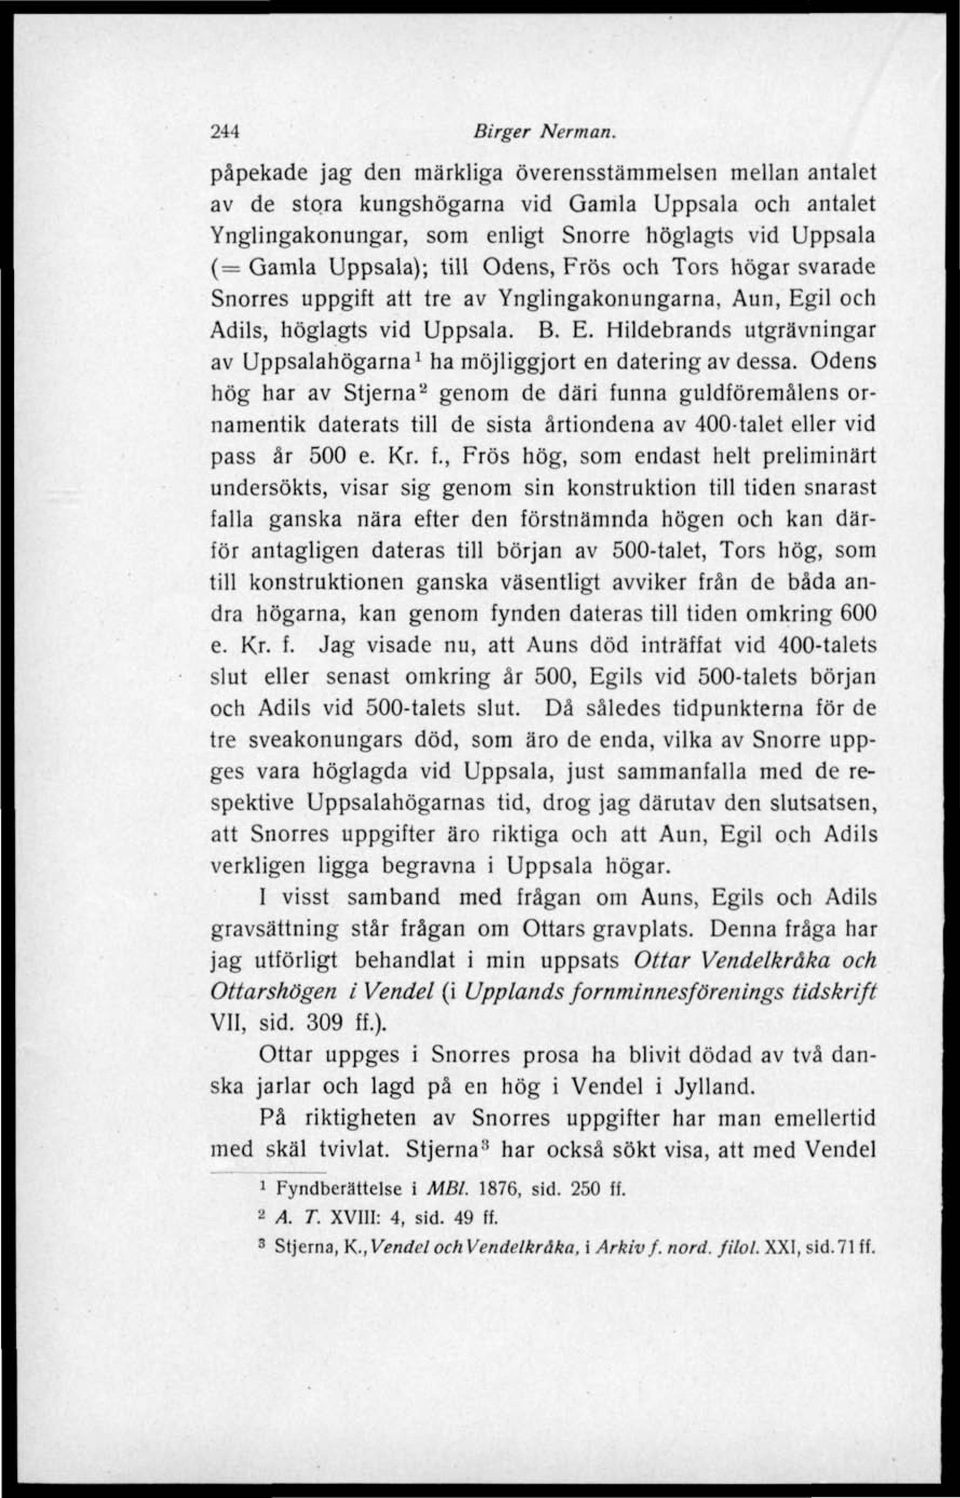 Odens, Frös och Tors högar svarade Snorres uppgift att tre av Ynglingakonungarna, Aun, Egil och Adils, höglagts vid Uppsala. B. E. Hildebrands utgrävningar av Uppsalahögarna 1 ha möjliggjort en datering av dessa.